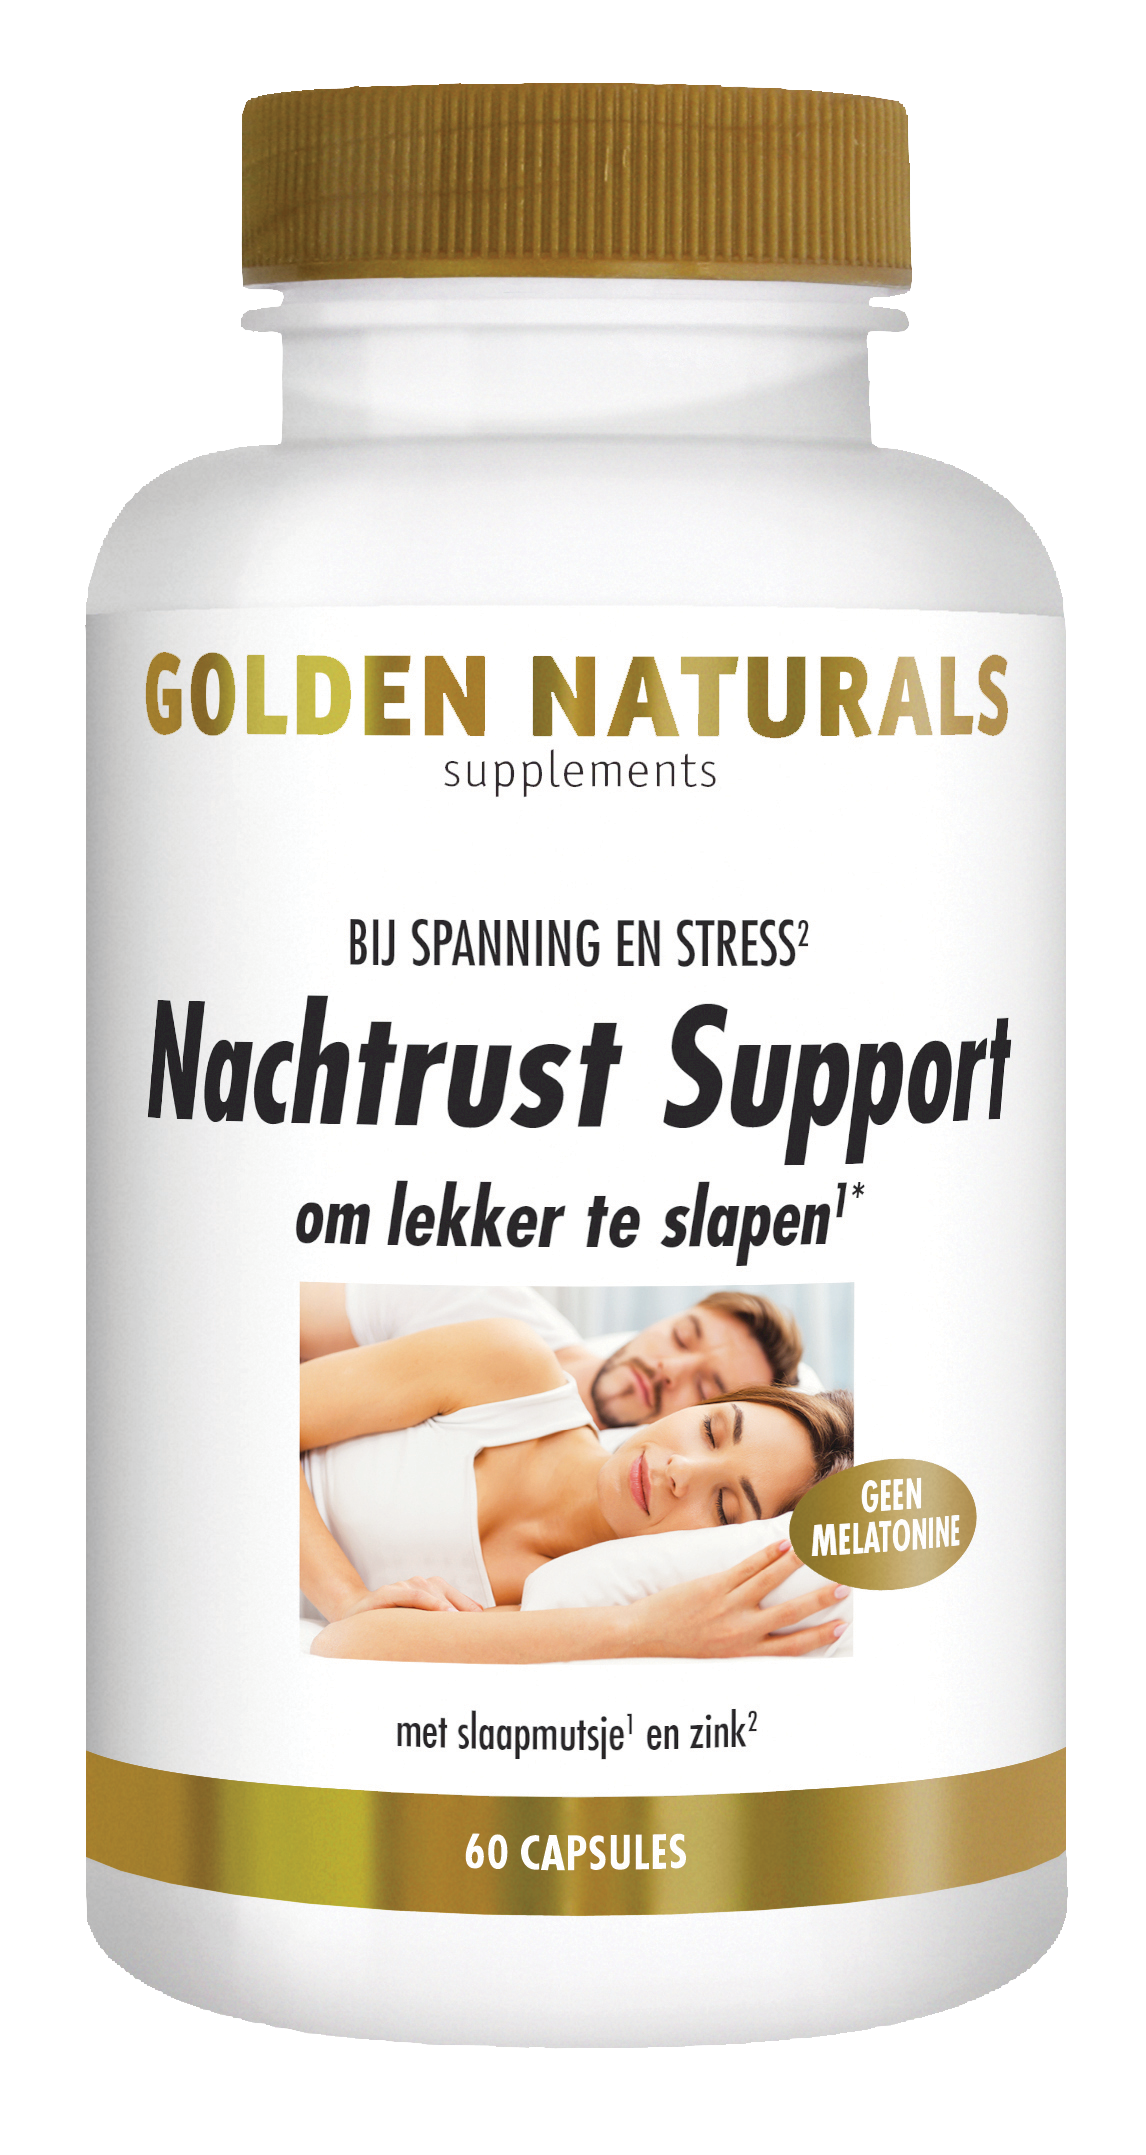 Golden Naturals Nachtrust Support (60 veganistische capsules)